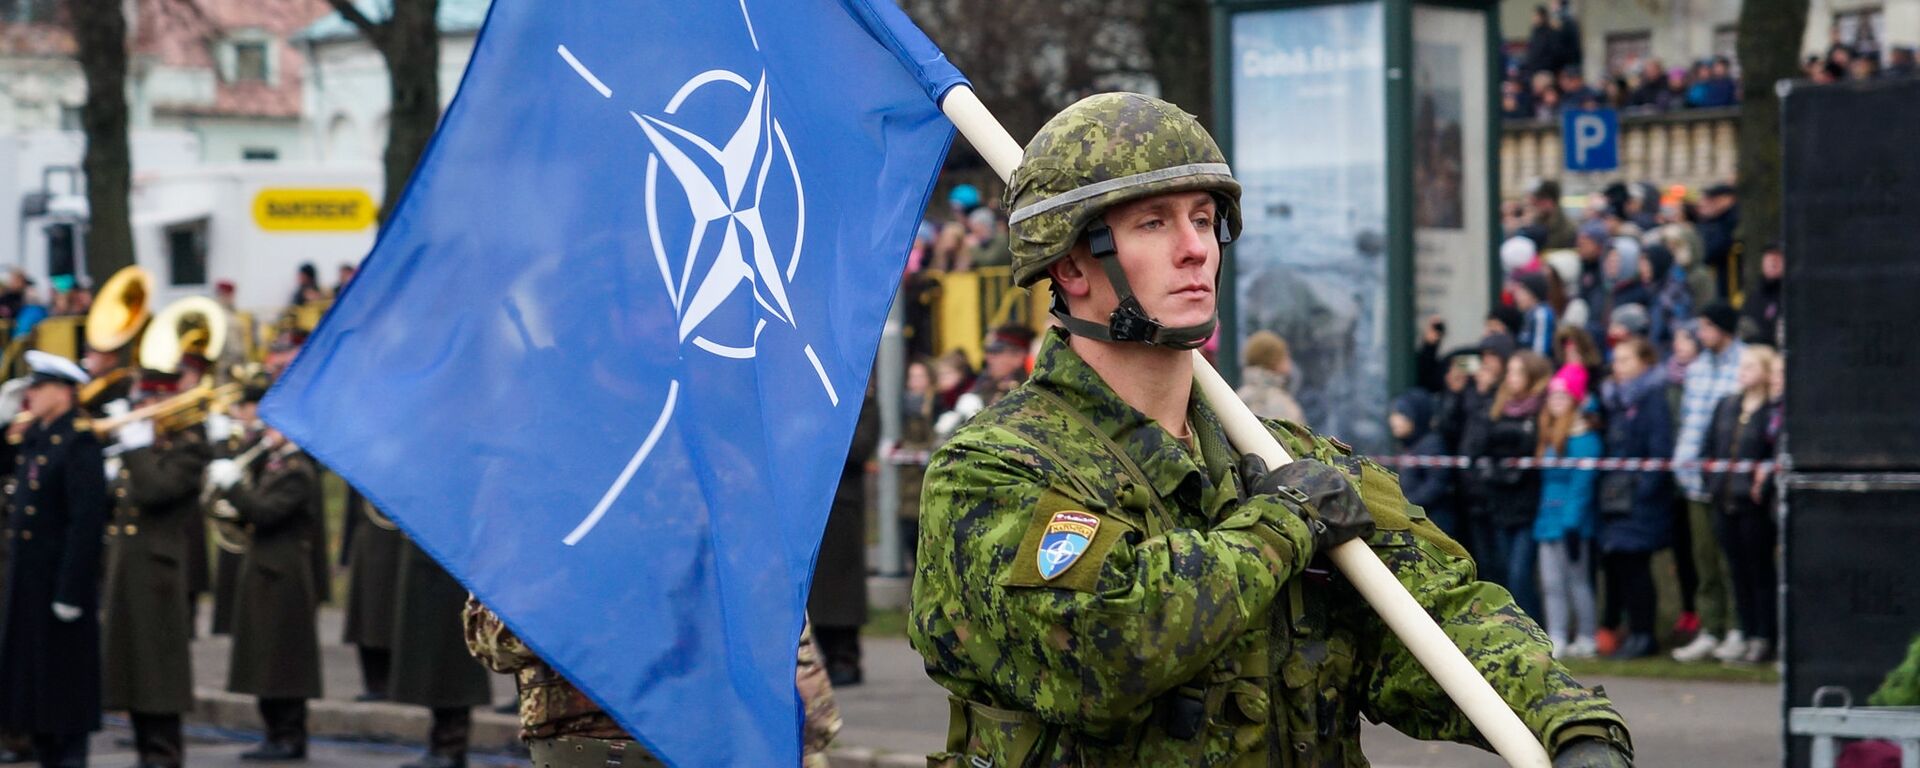 Военнослужащий Канады несет флаг НАТО на военном параде в Риге - Sputnik Латвия, 1920, 30.11.2021